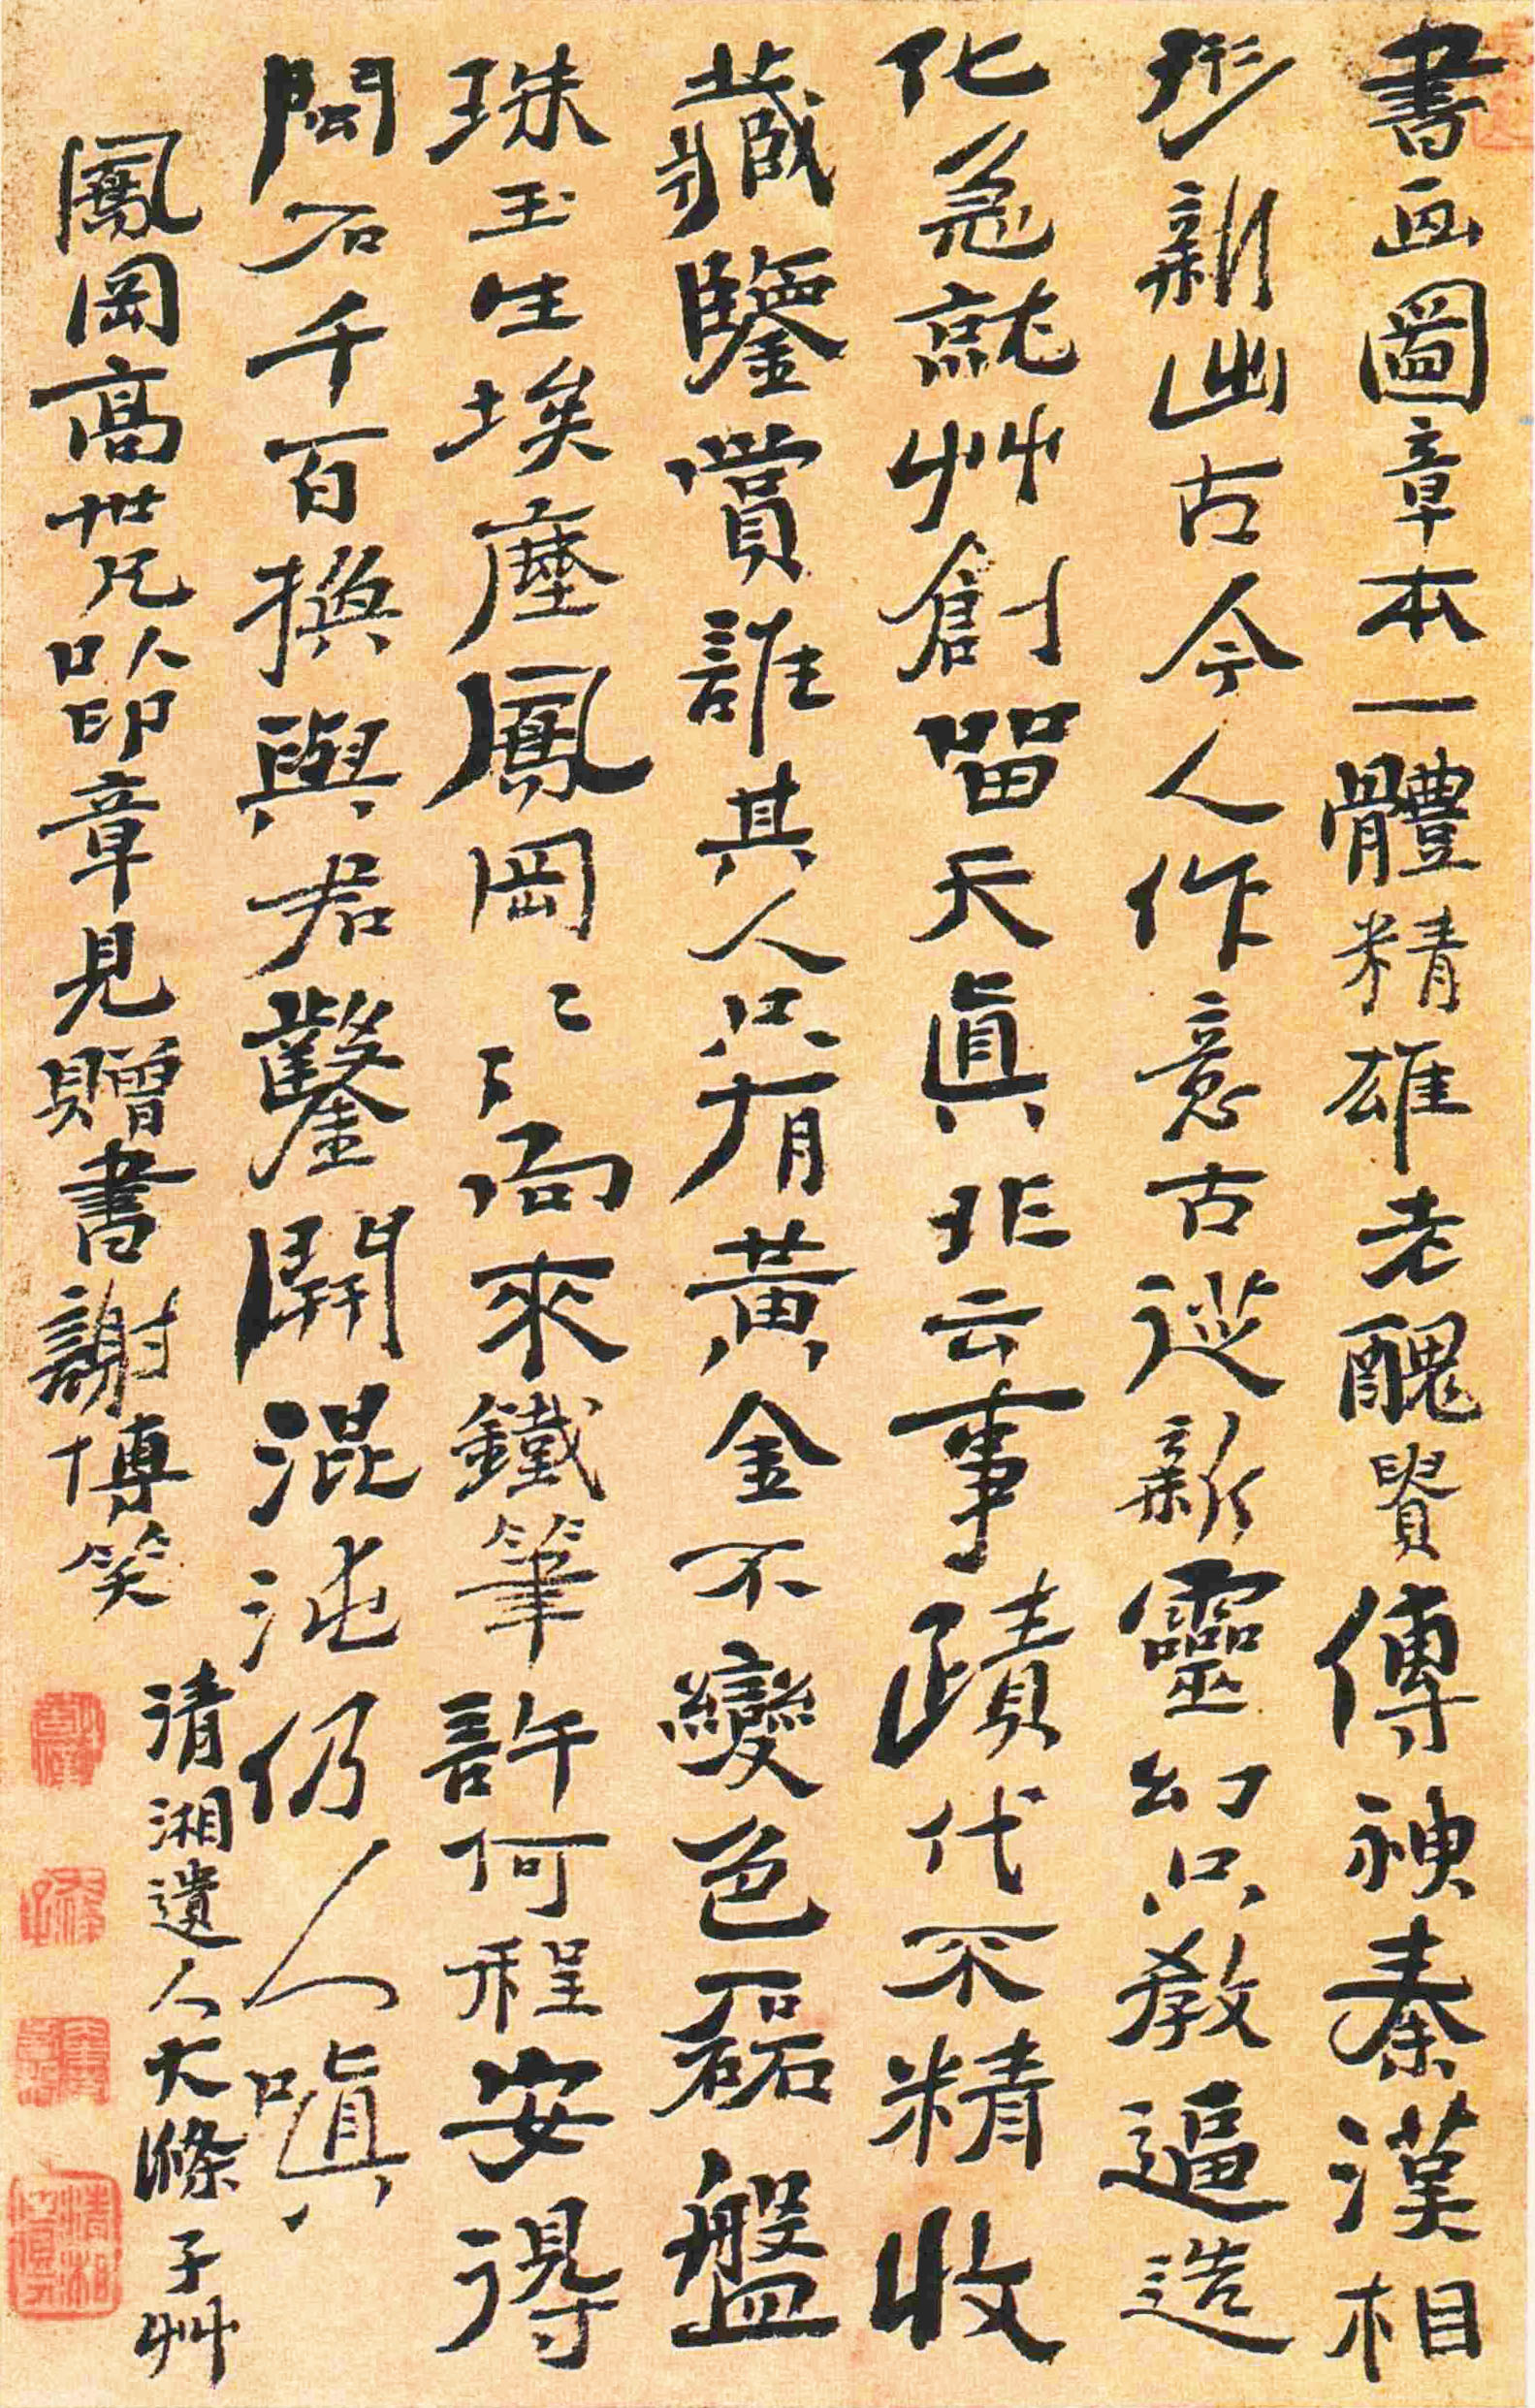 石涛《赠高凤翰七言诗札》-北京故宫博物院藏(图1)